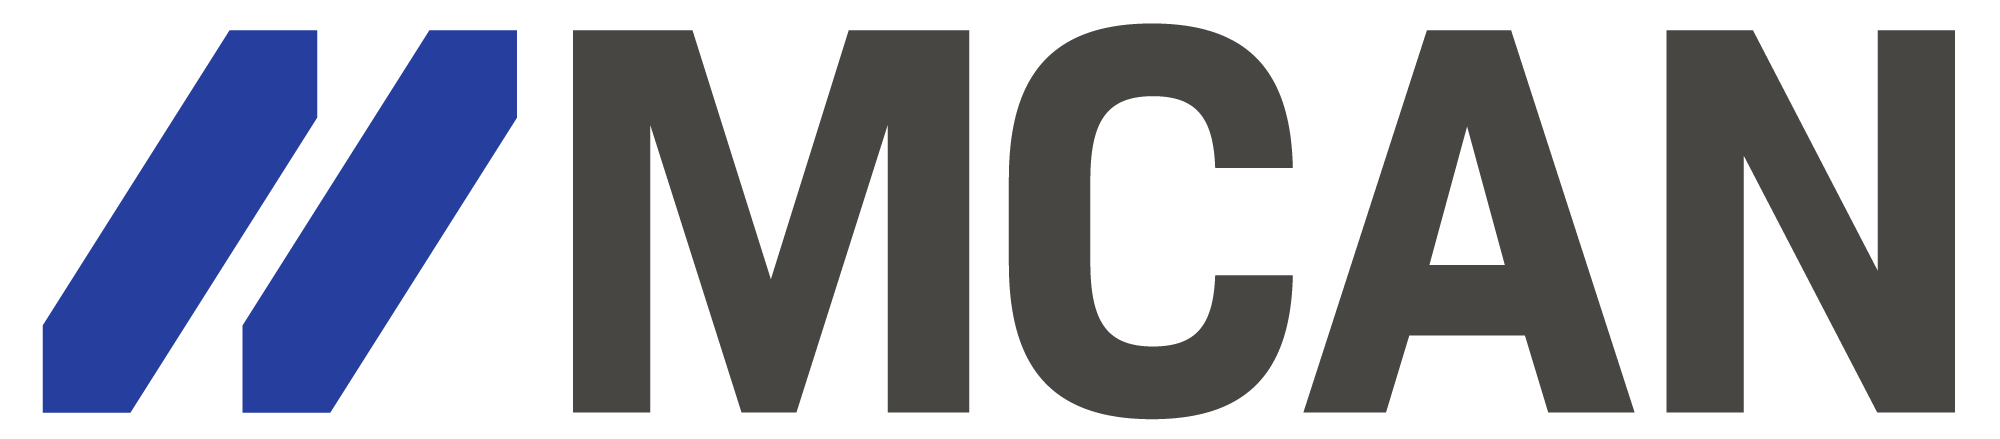 Michigan College Access Network logo